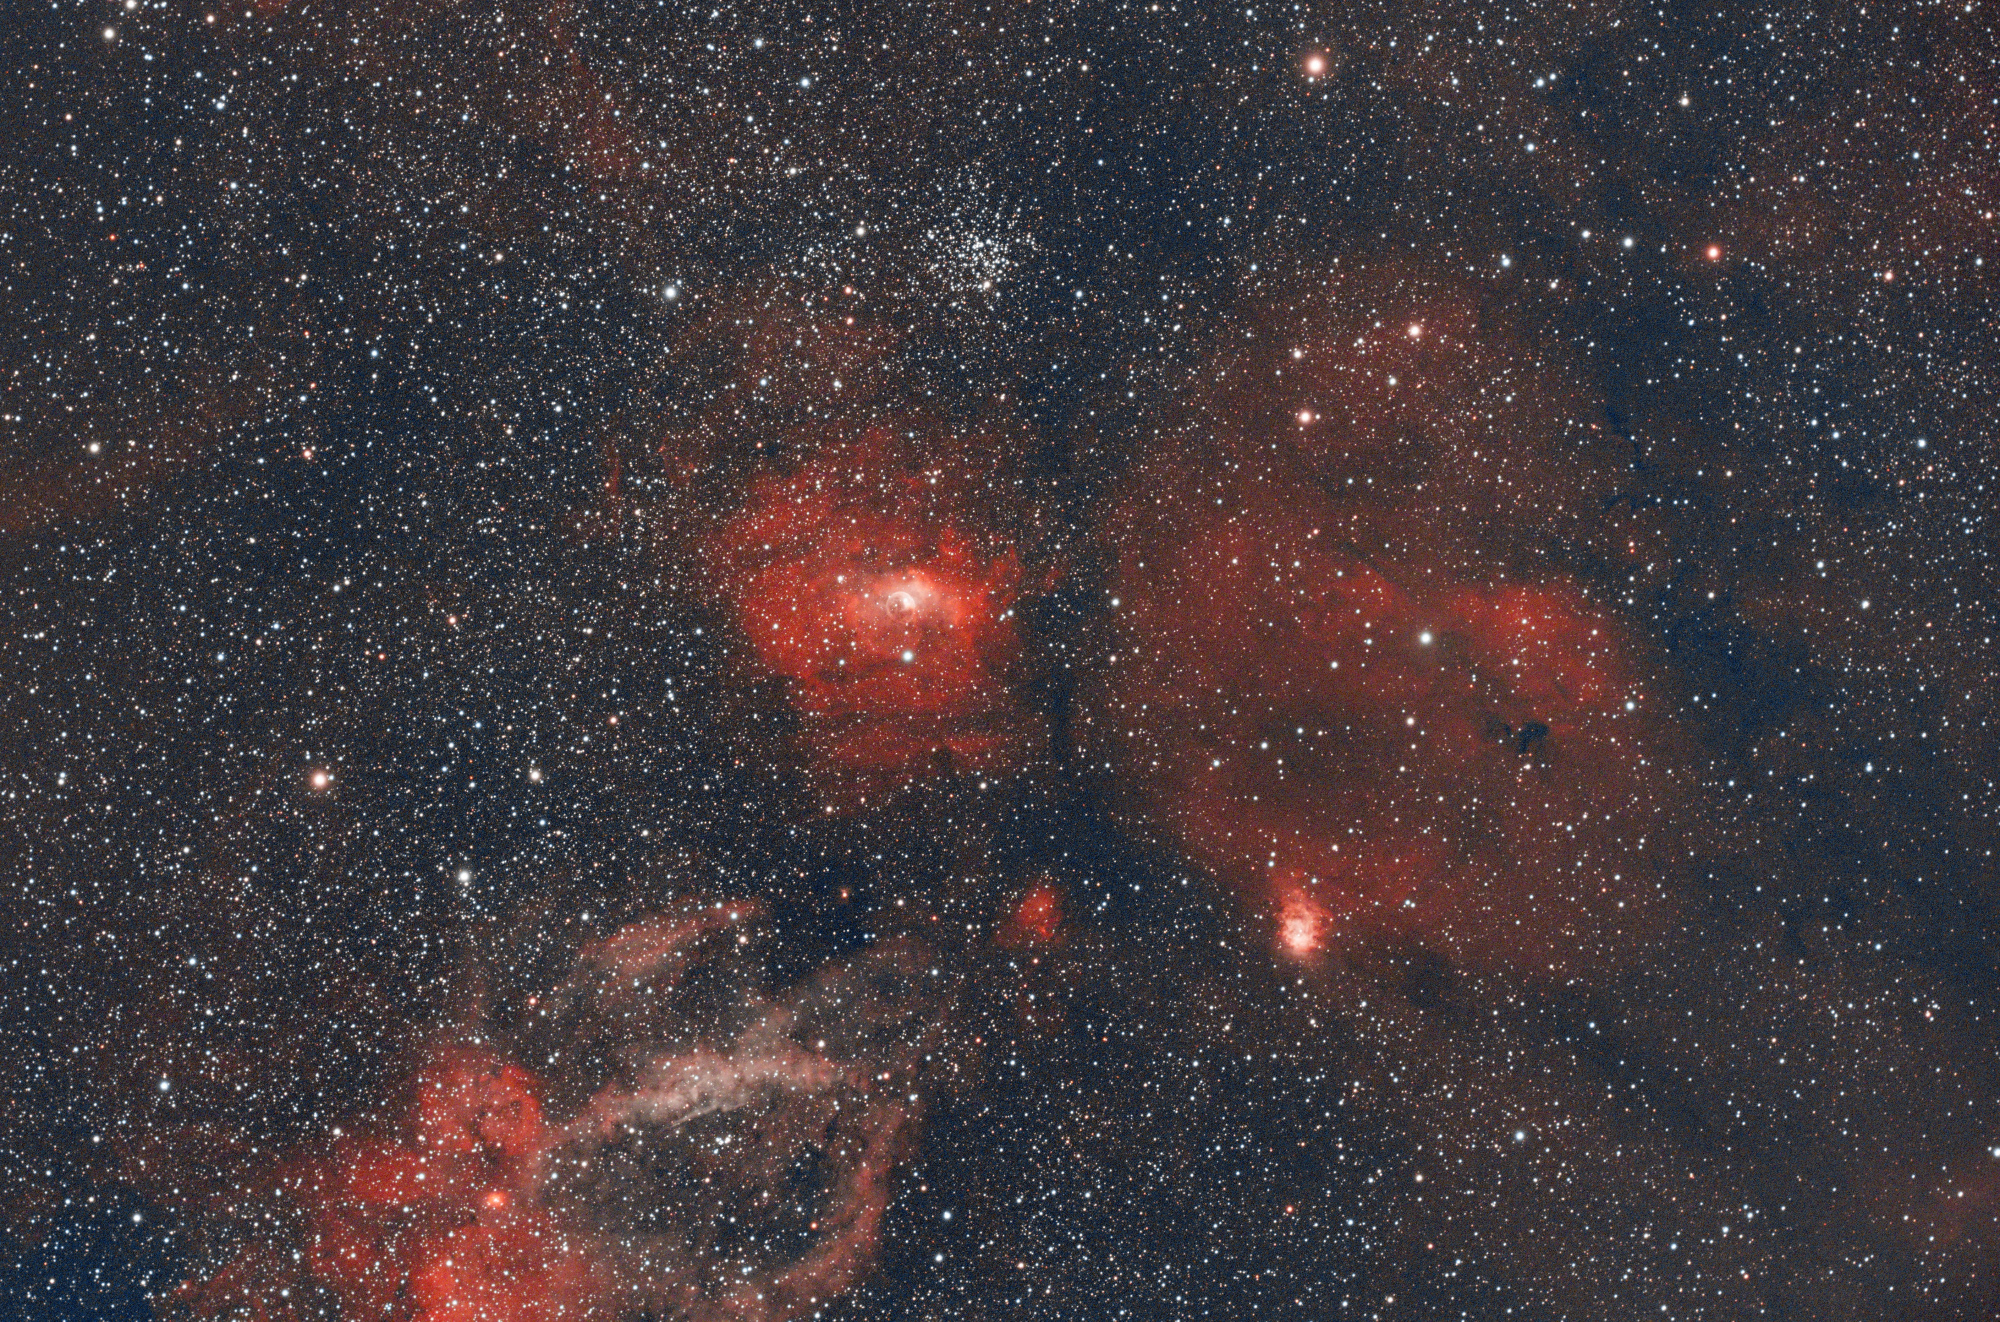 NGC7635_60x300s_Bin1_gain100_-20C_GIMP_niv_net_crop.thumb.jpg.51ece3a40bc4f092a8e3368690e6ae46.jpg